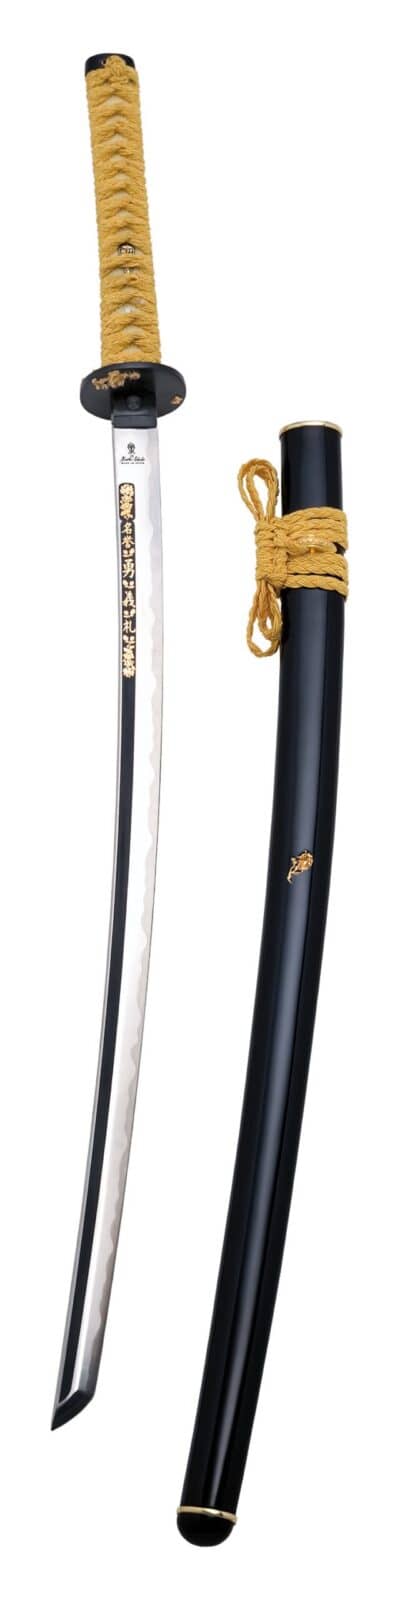 Katana Kamakura edición limitada AC0500 - Espadas y Más